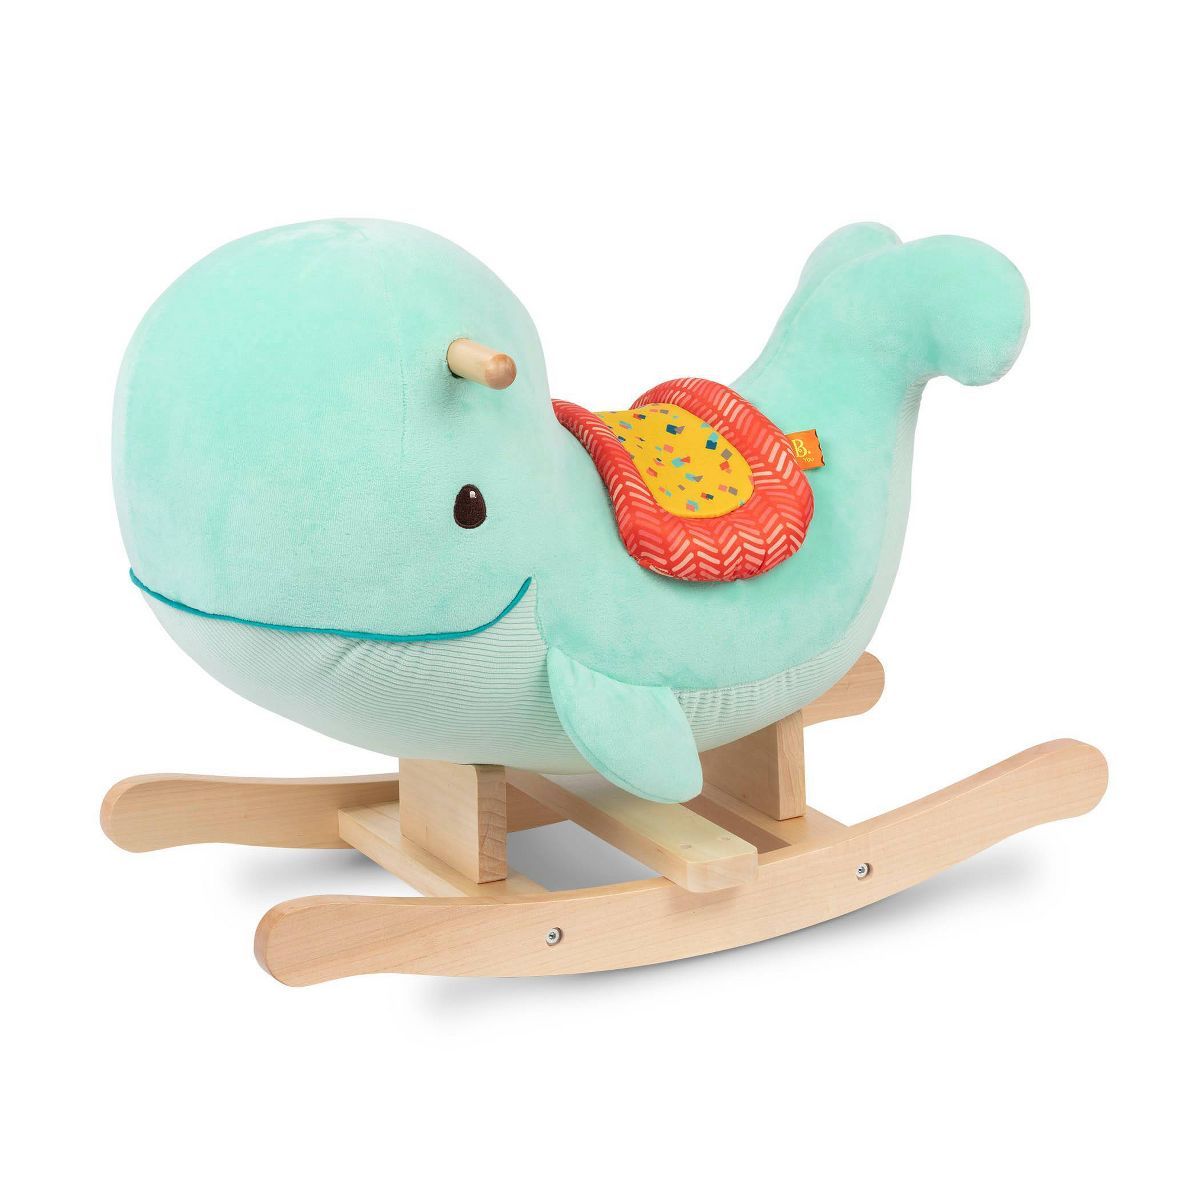 B. toys Wooden Whale Rocker Echo | Target